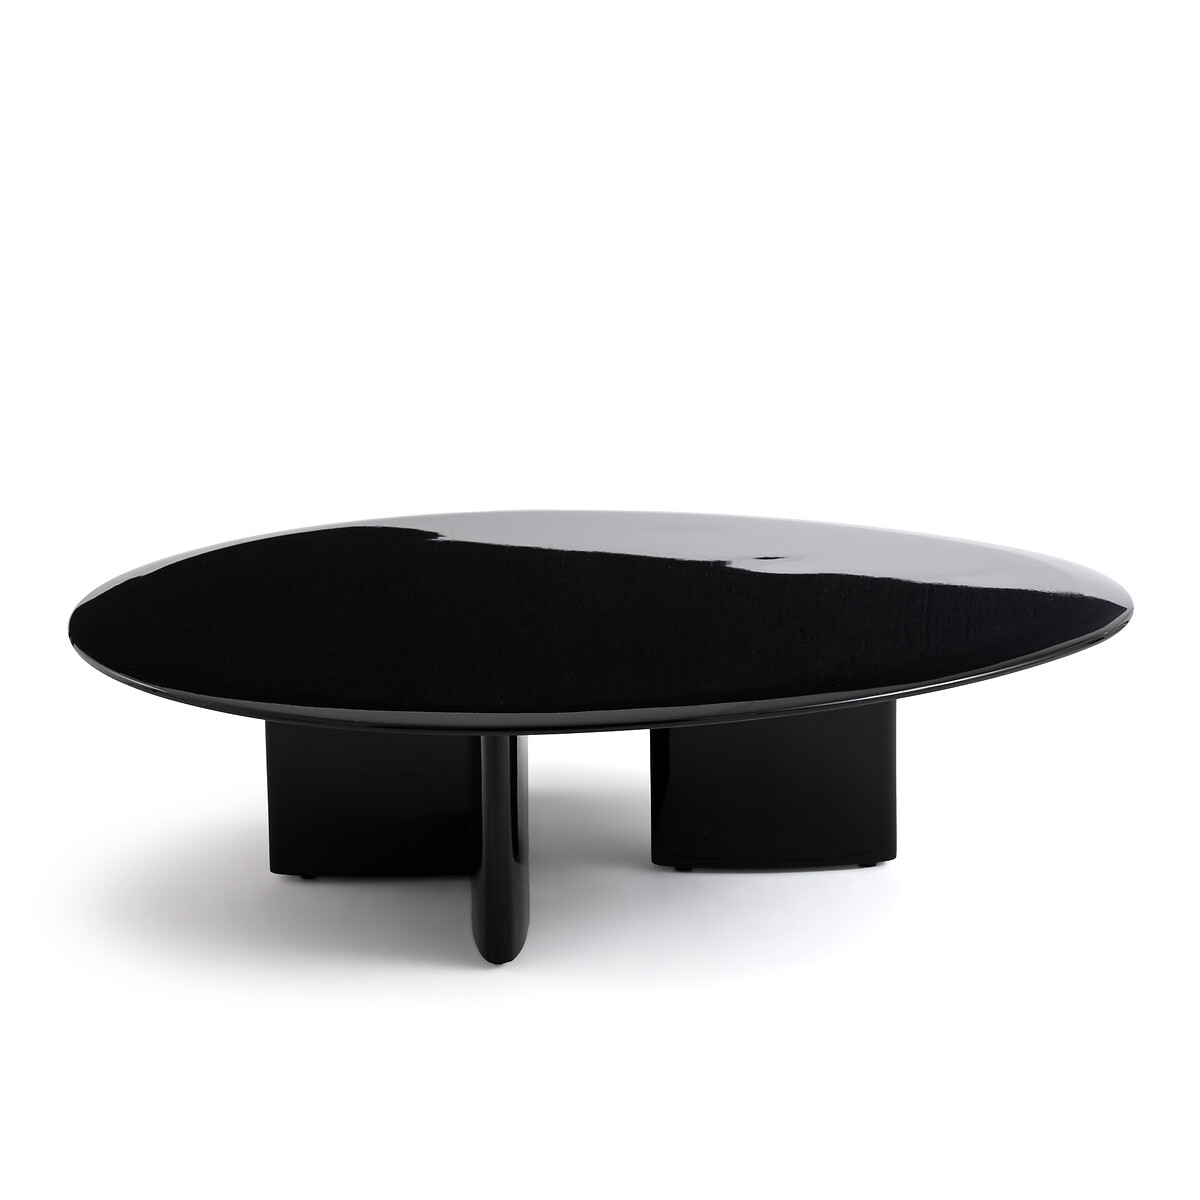 стол журнальный металлический hiba единый размер черный Стол журнальный лакированный Laki единый размер черный